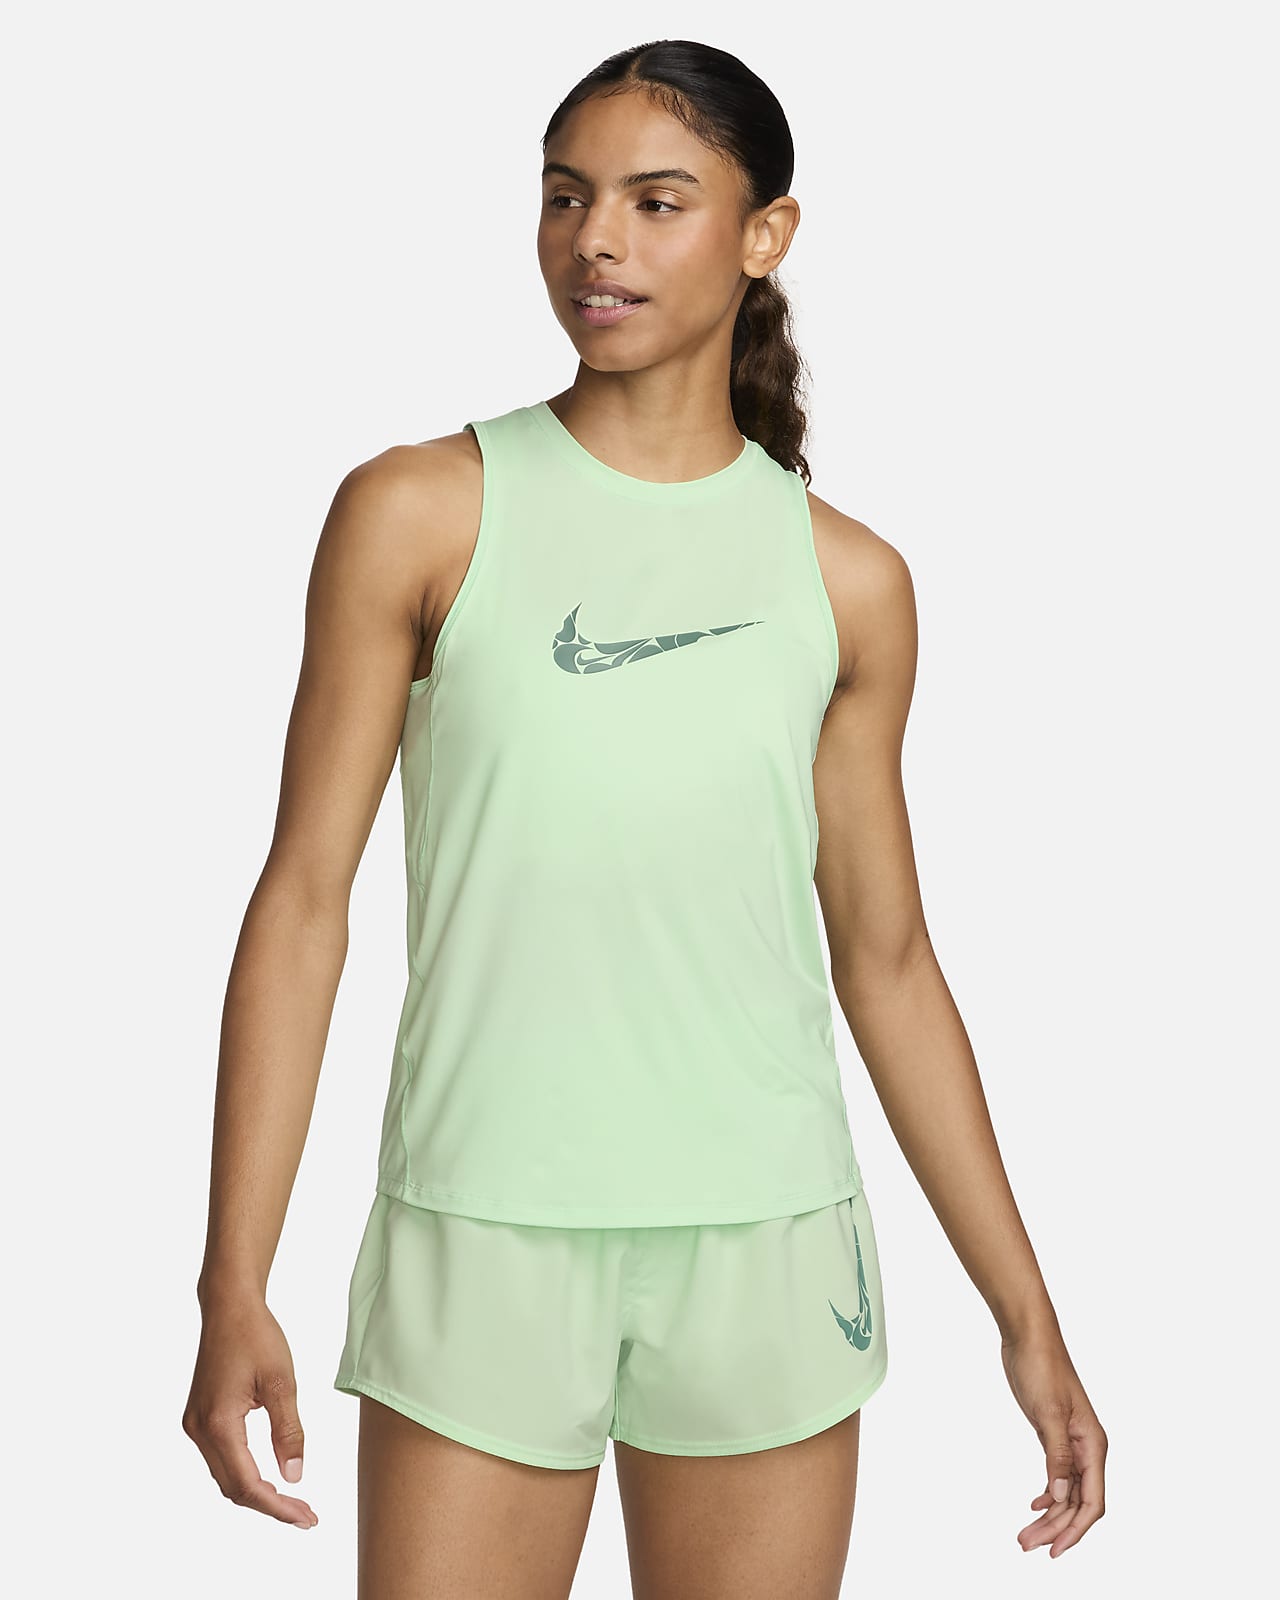 Canotta da running con grafica Nike One – Donna